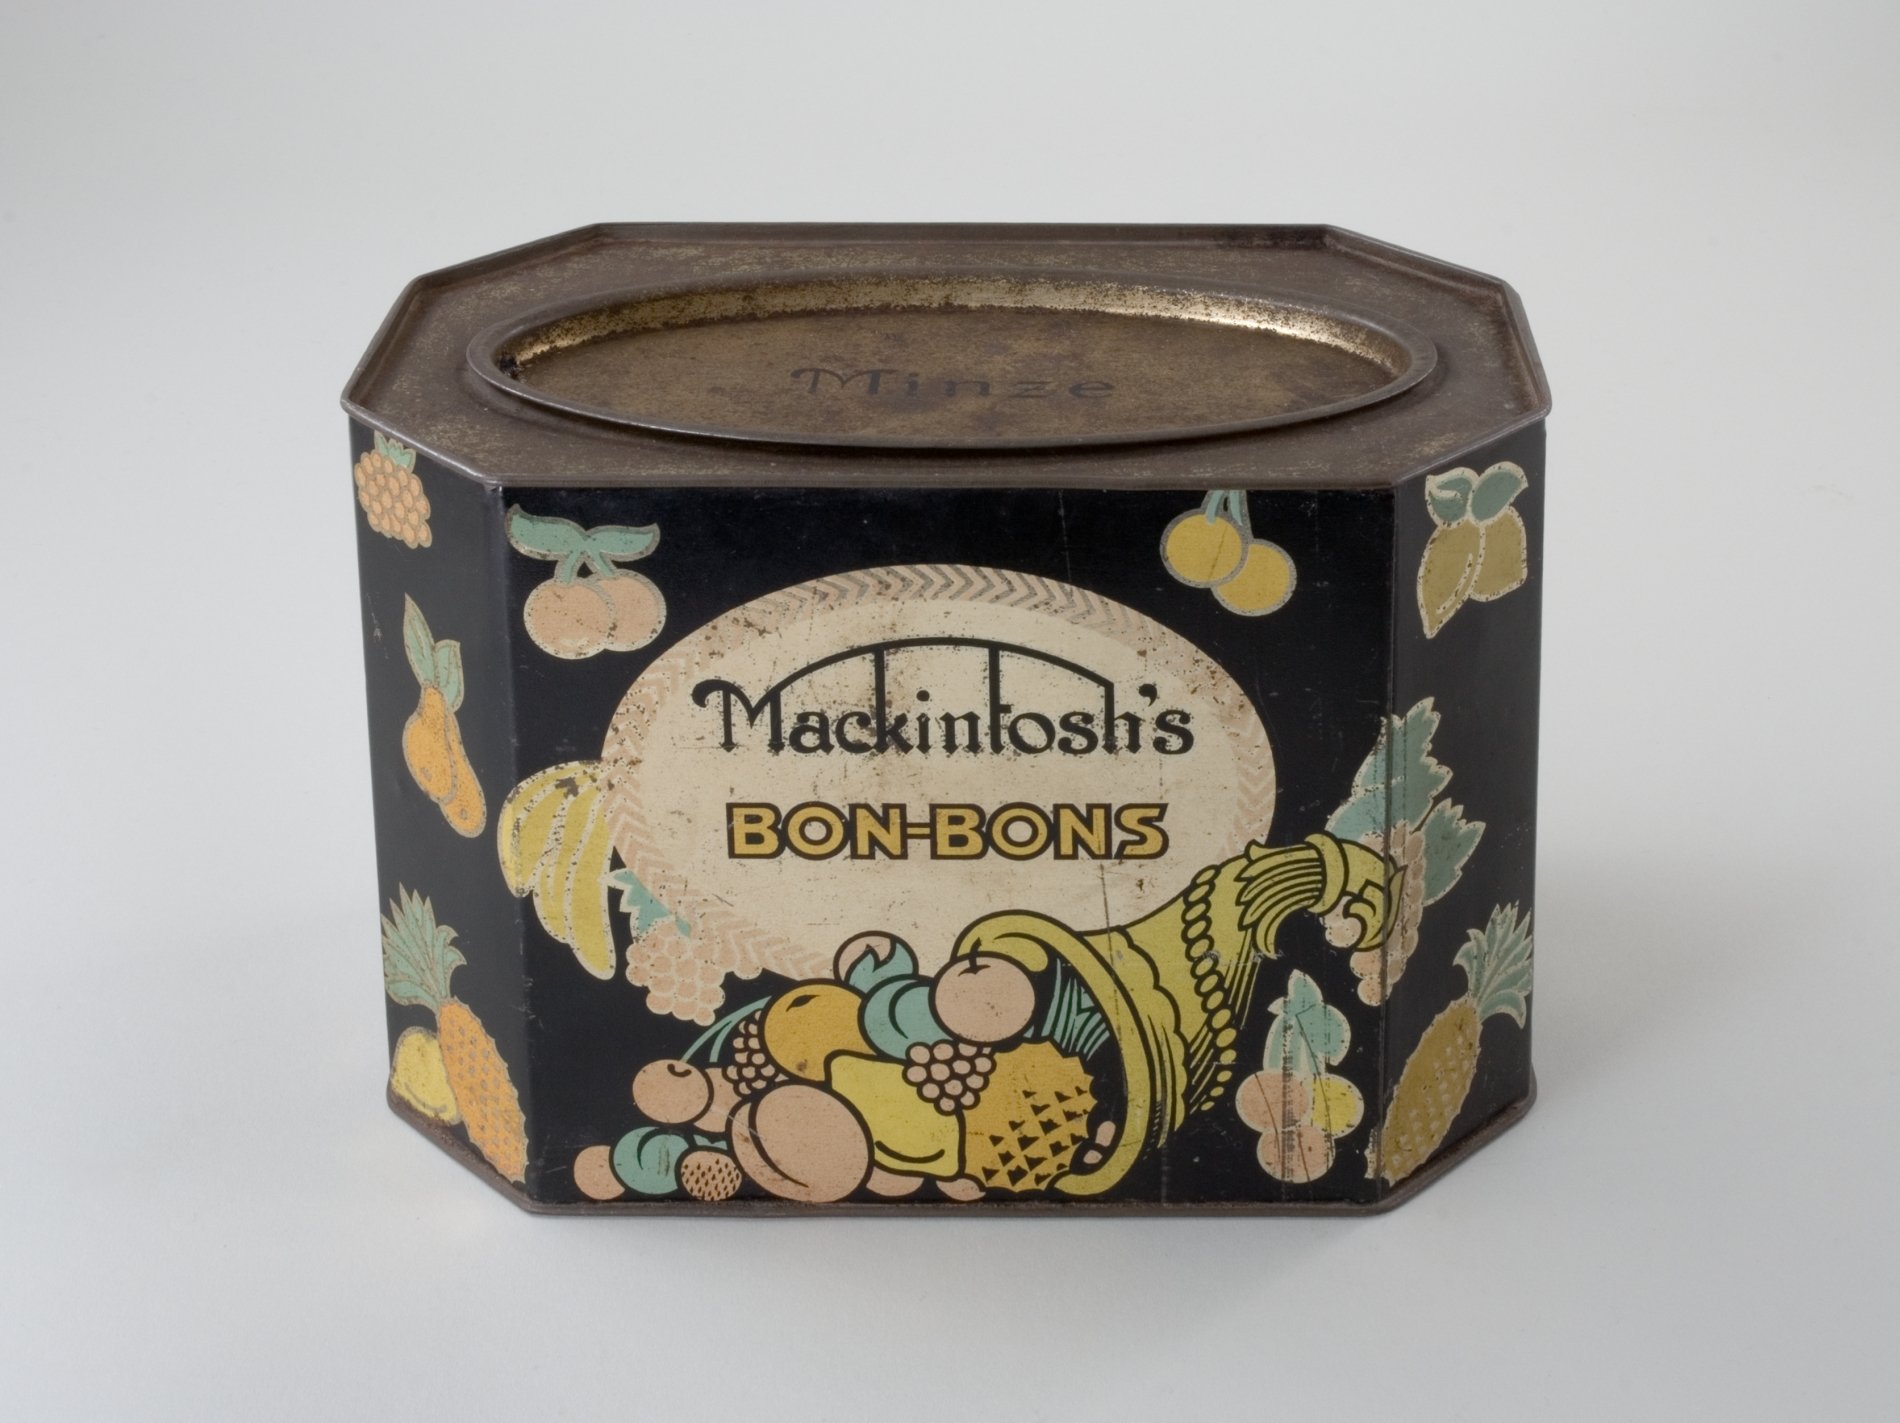 Bonbondose der Firma "Mackintosh's" (Stiftung Domäne Dahlem - Landgut und Museum, Weiternutzung nur mit Genehmigung des Museums CC BY-NC-SA)